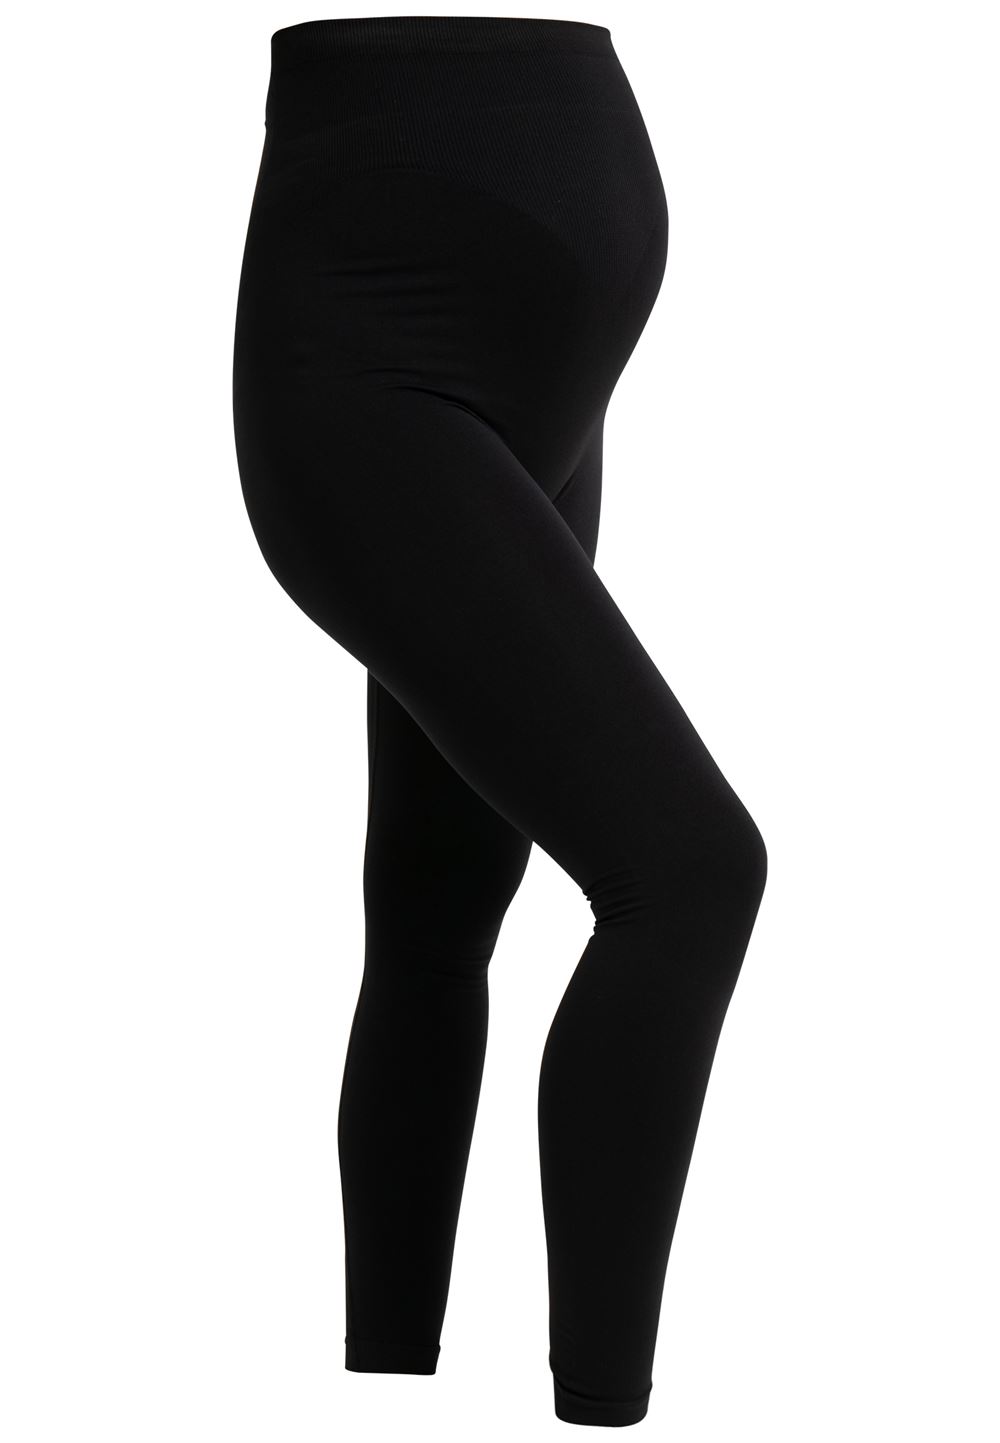 Graviditets leggings sorte - Former din mave hele graviditeten igennem